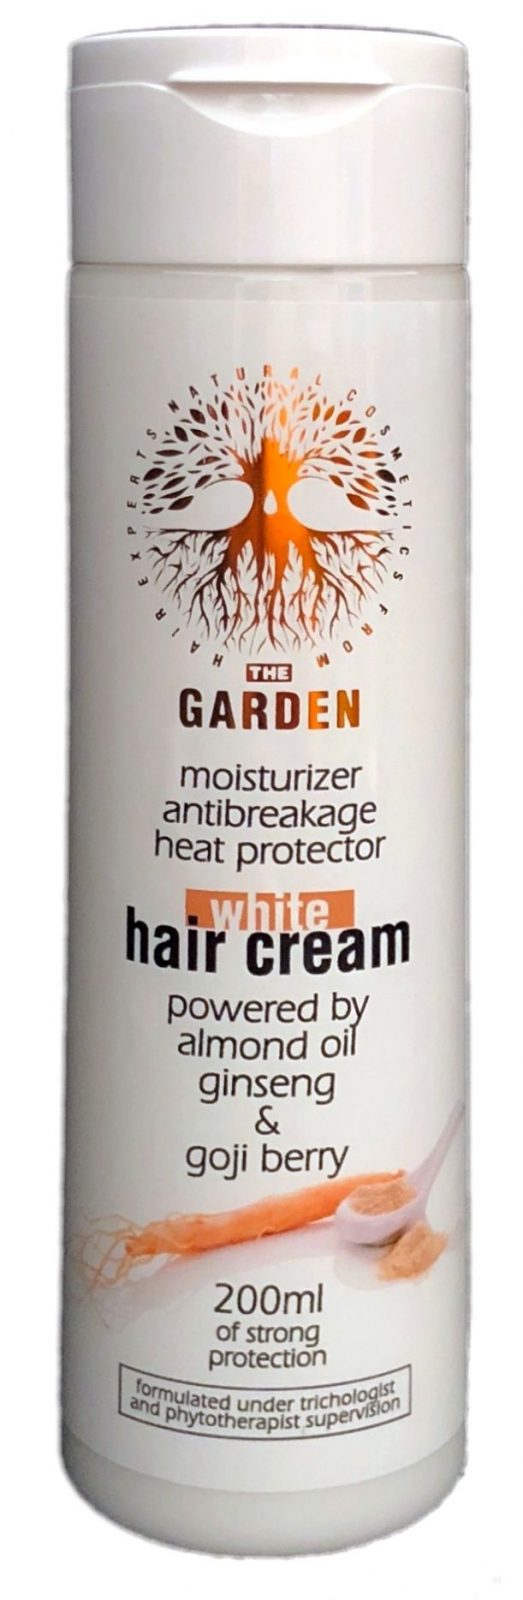 The GARDEN - White Hair Cream prirodna vlasova kozmetika